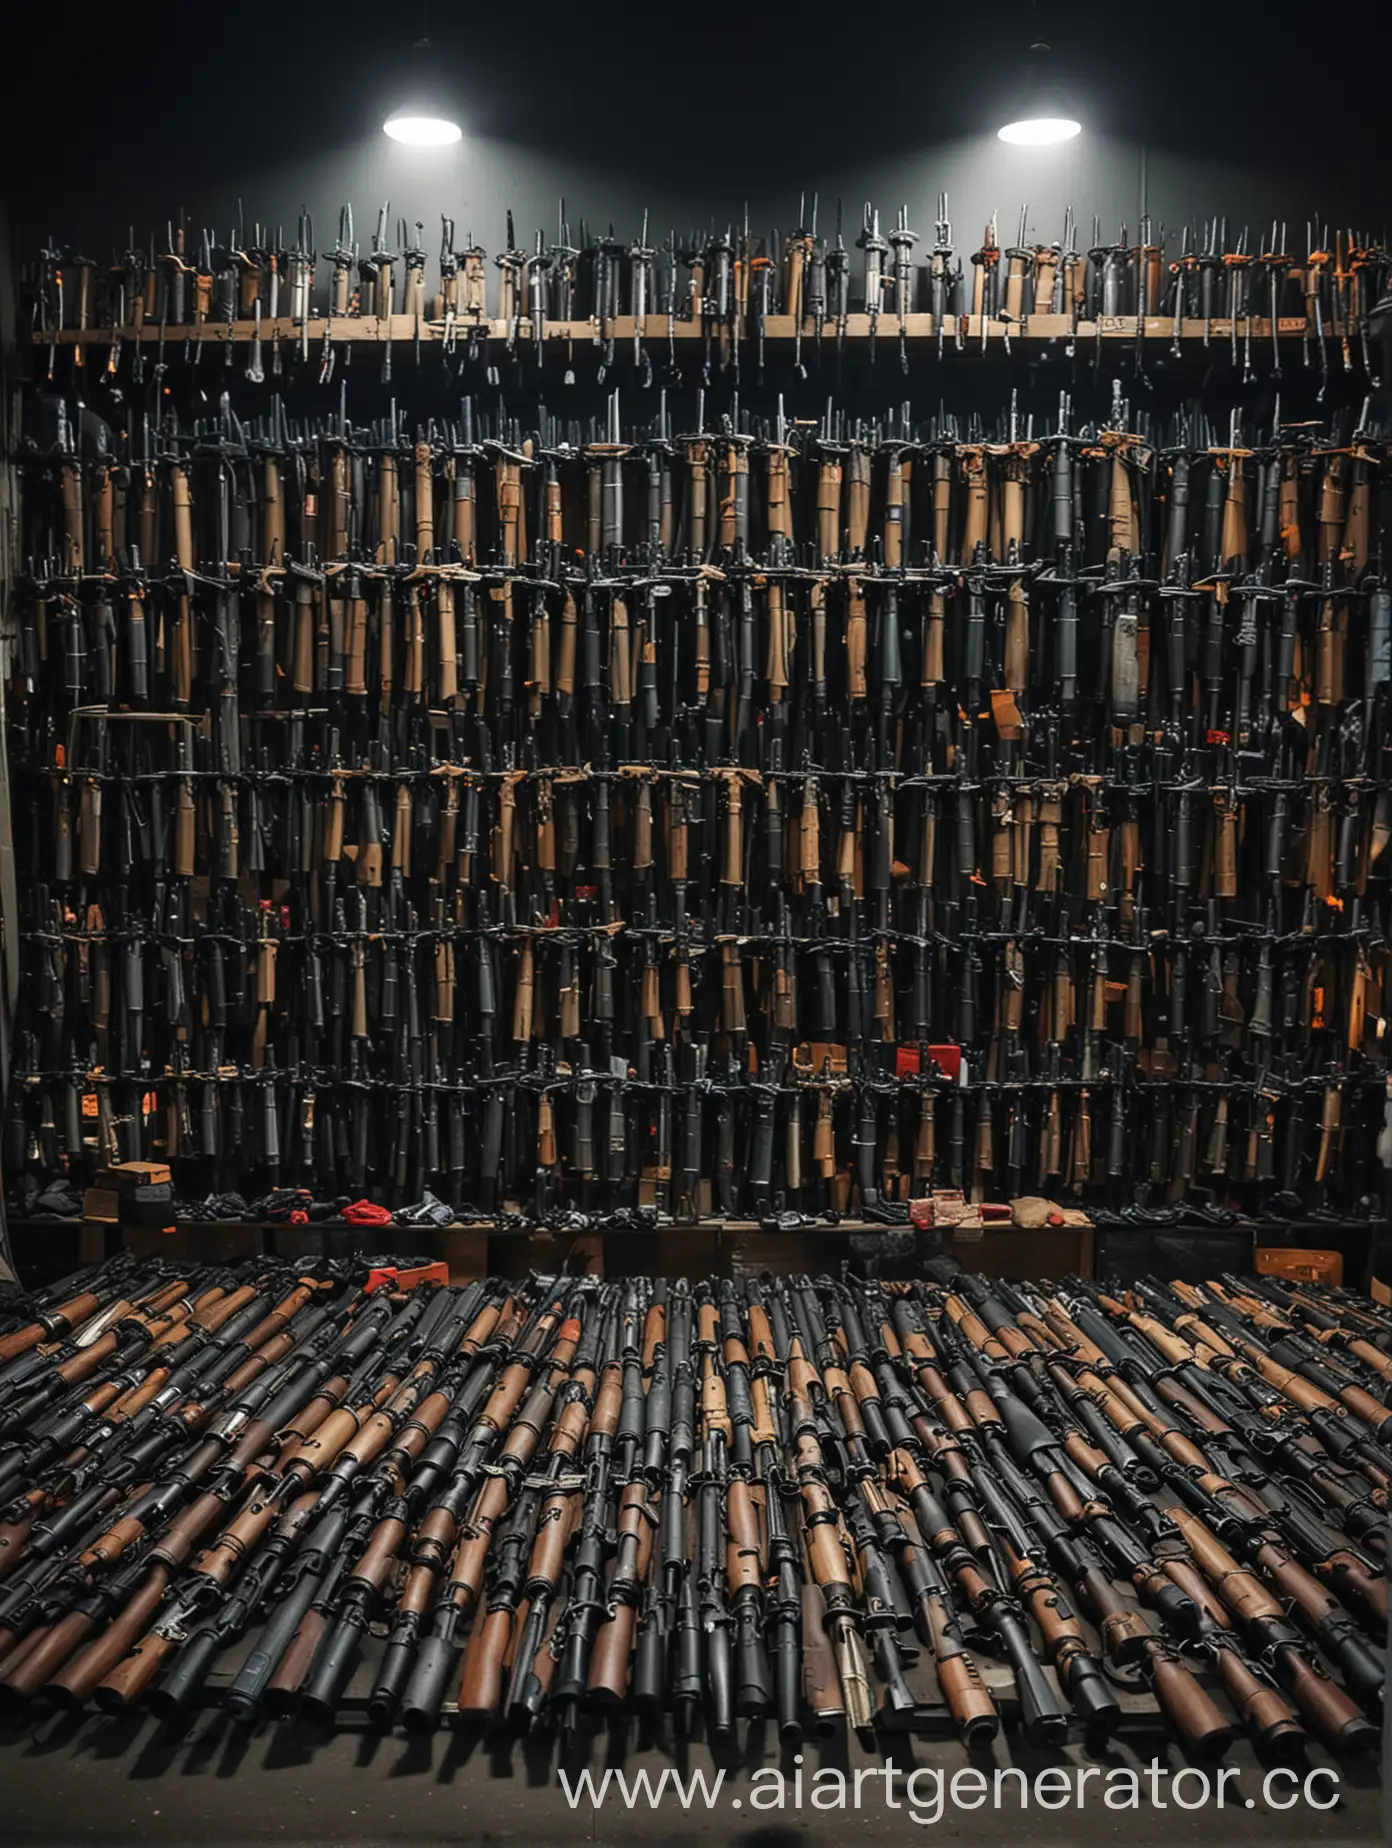 Создай фотографию с ночным рынком из оружия, где везде будет оружие для покупки